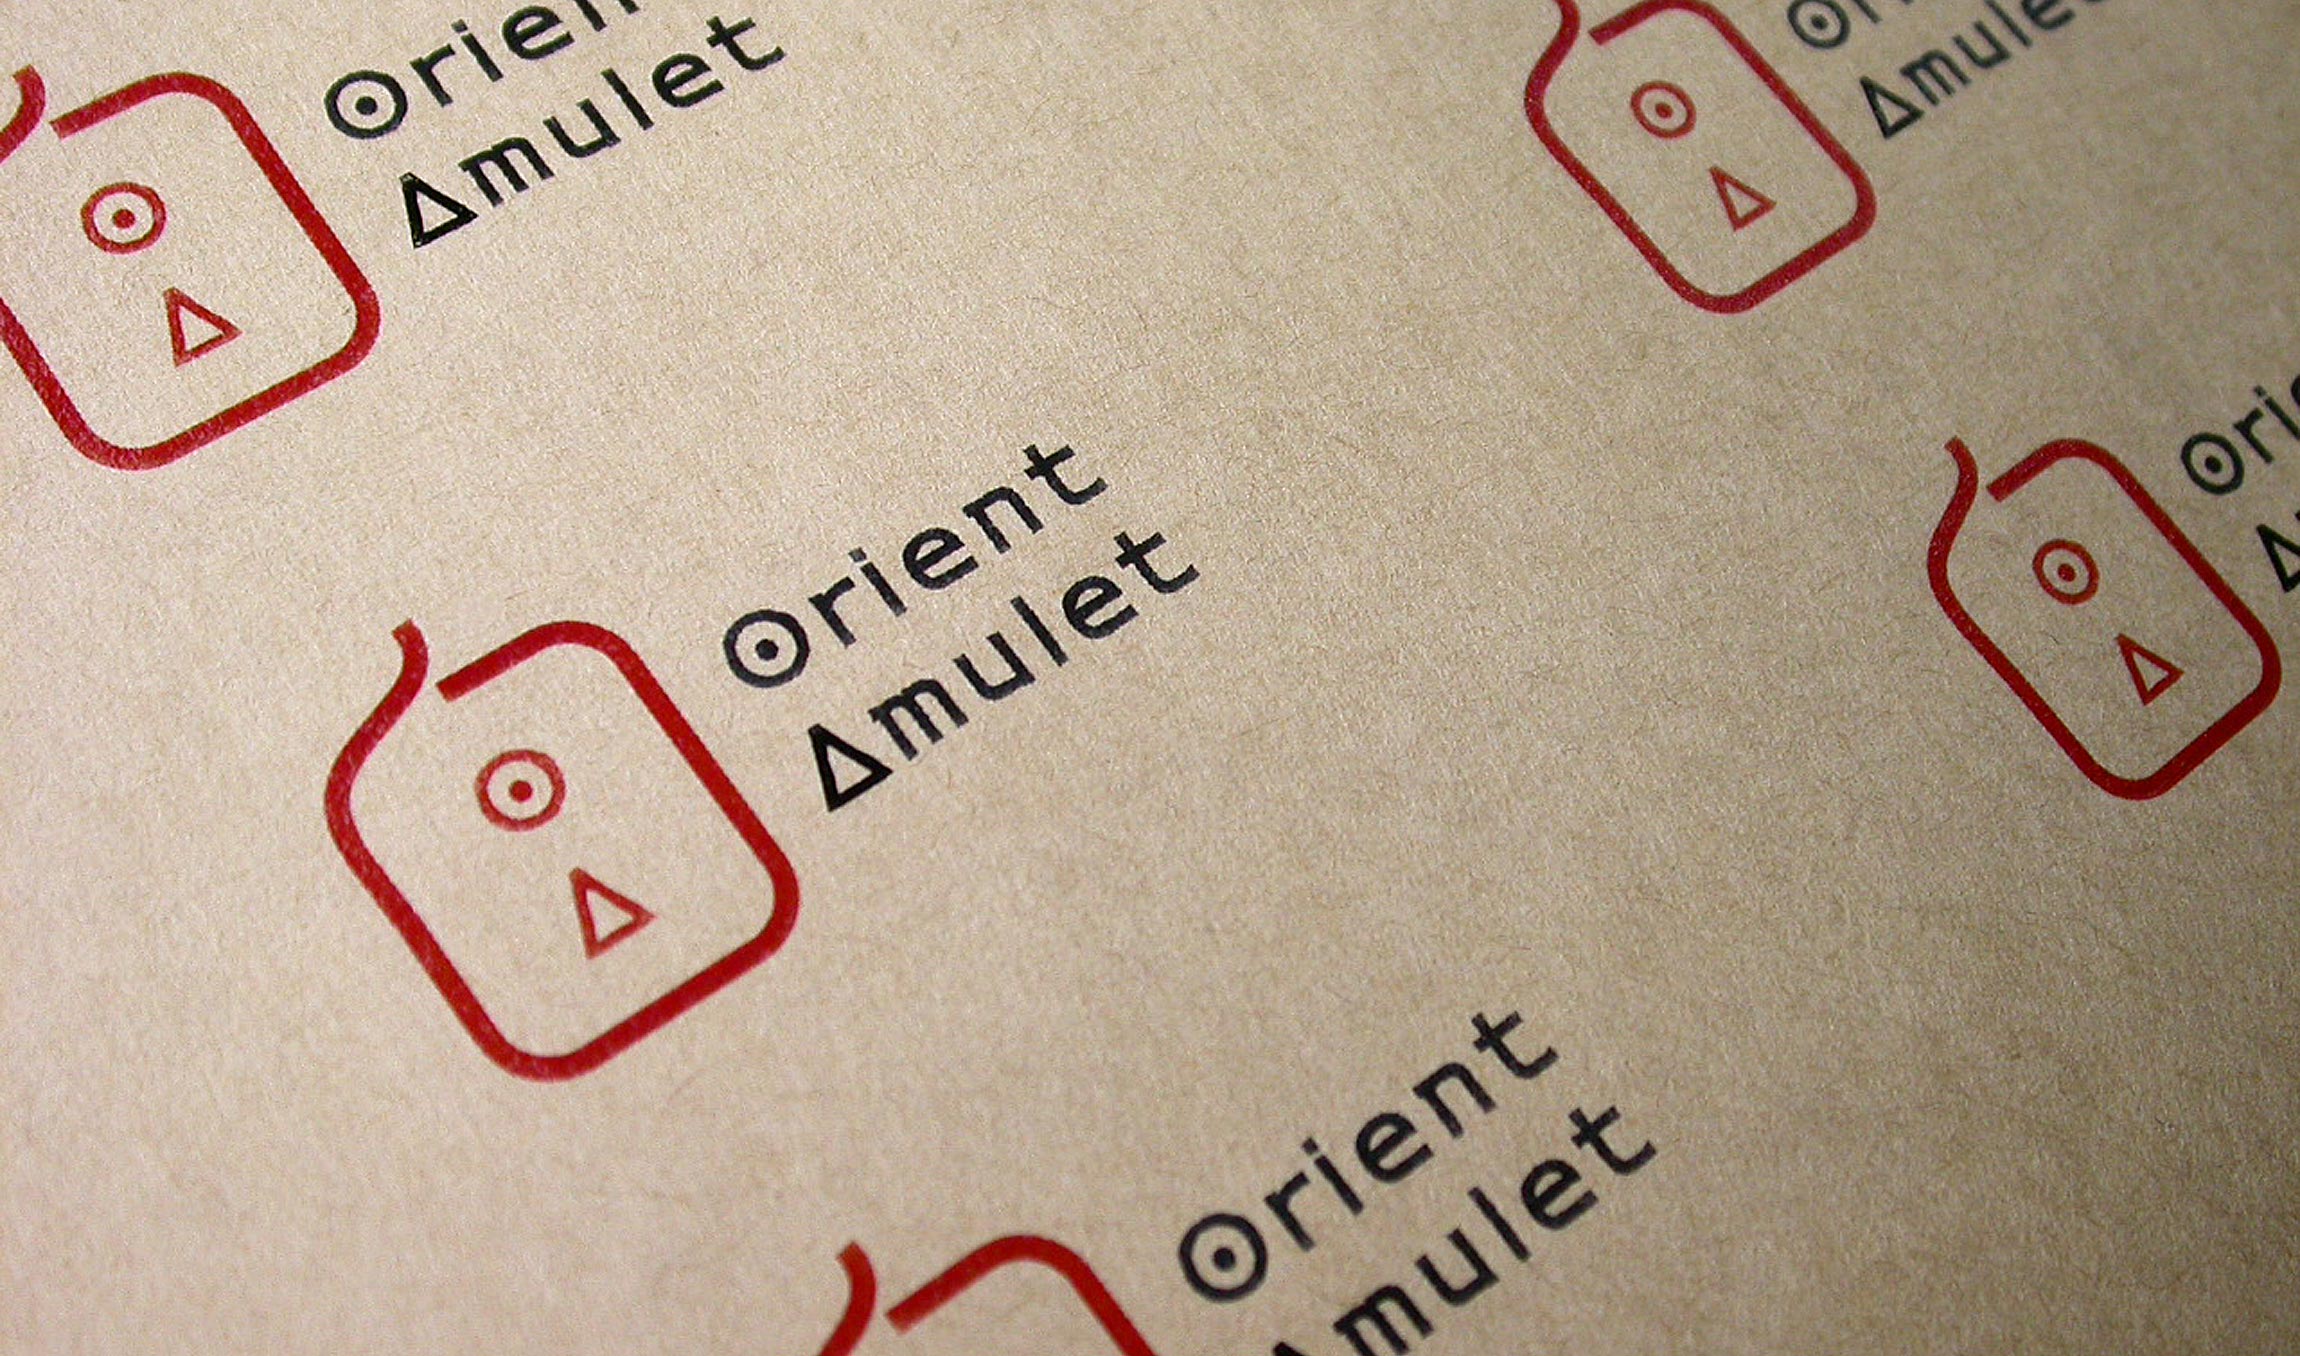 Orient Amulet OrientAmulet 로고, 마크, CI, 브랜드 orientamulet-amulet-3.jpg